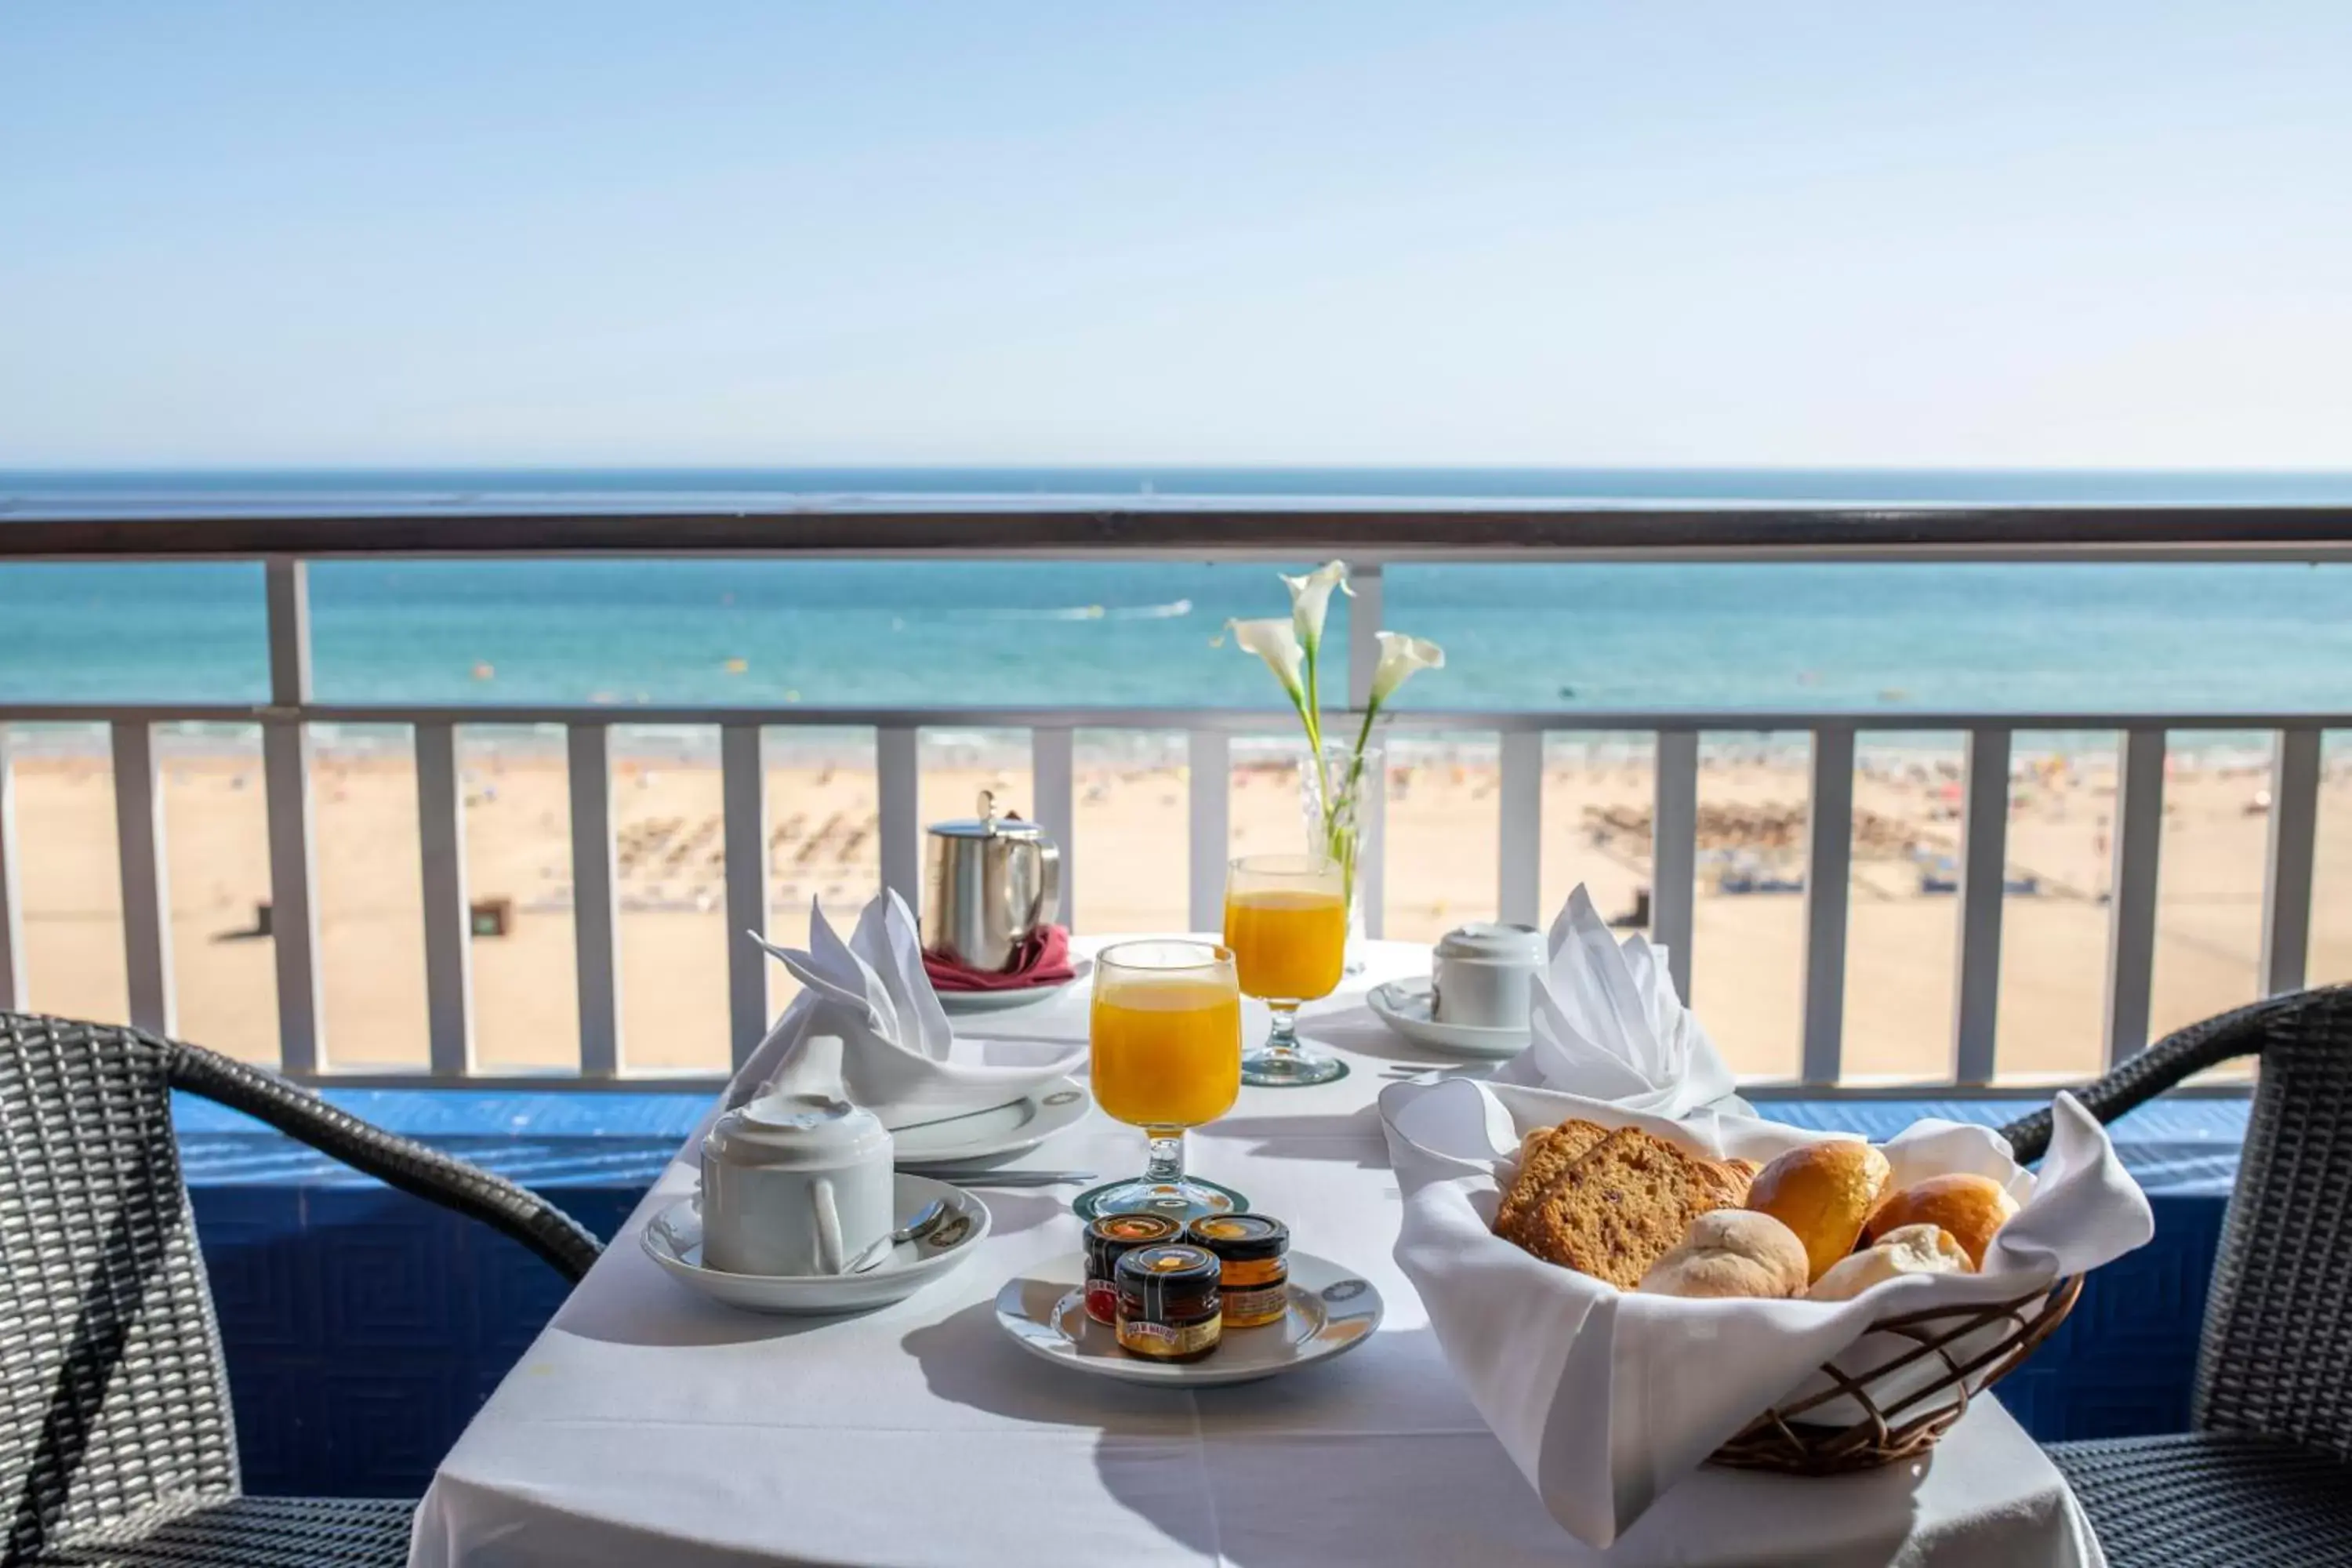 Sea view in Algarve Casino Hotel